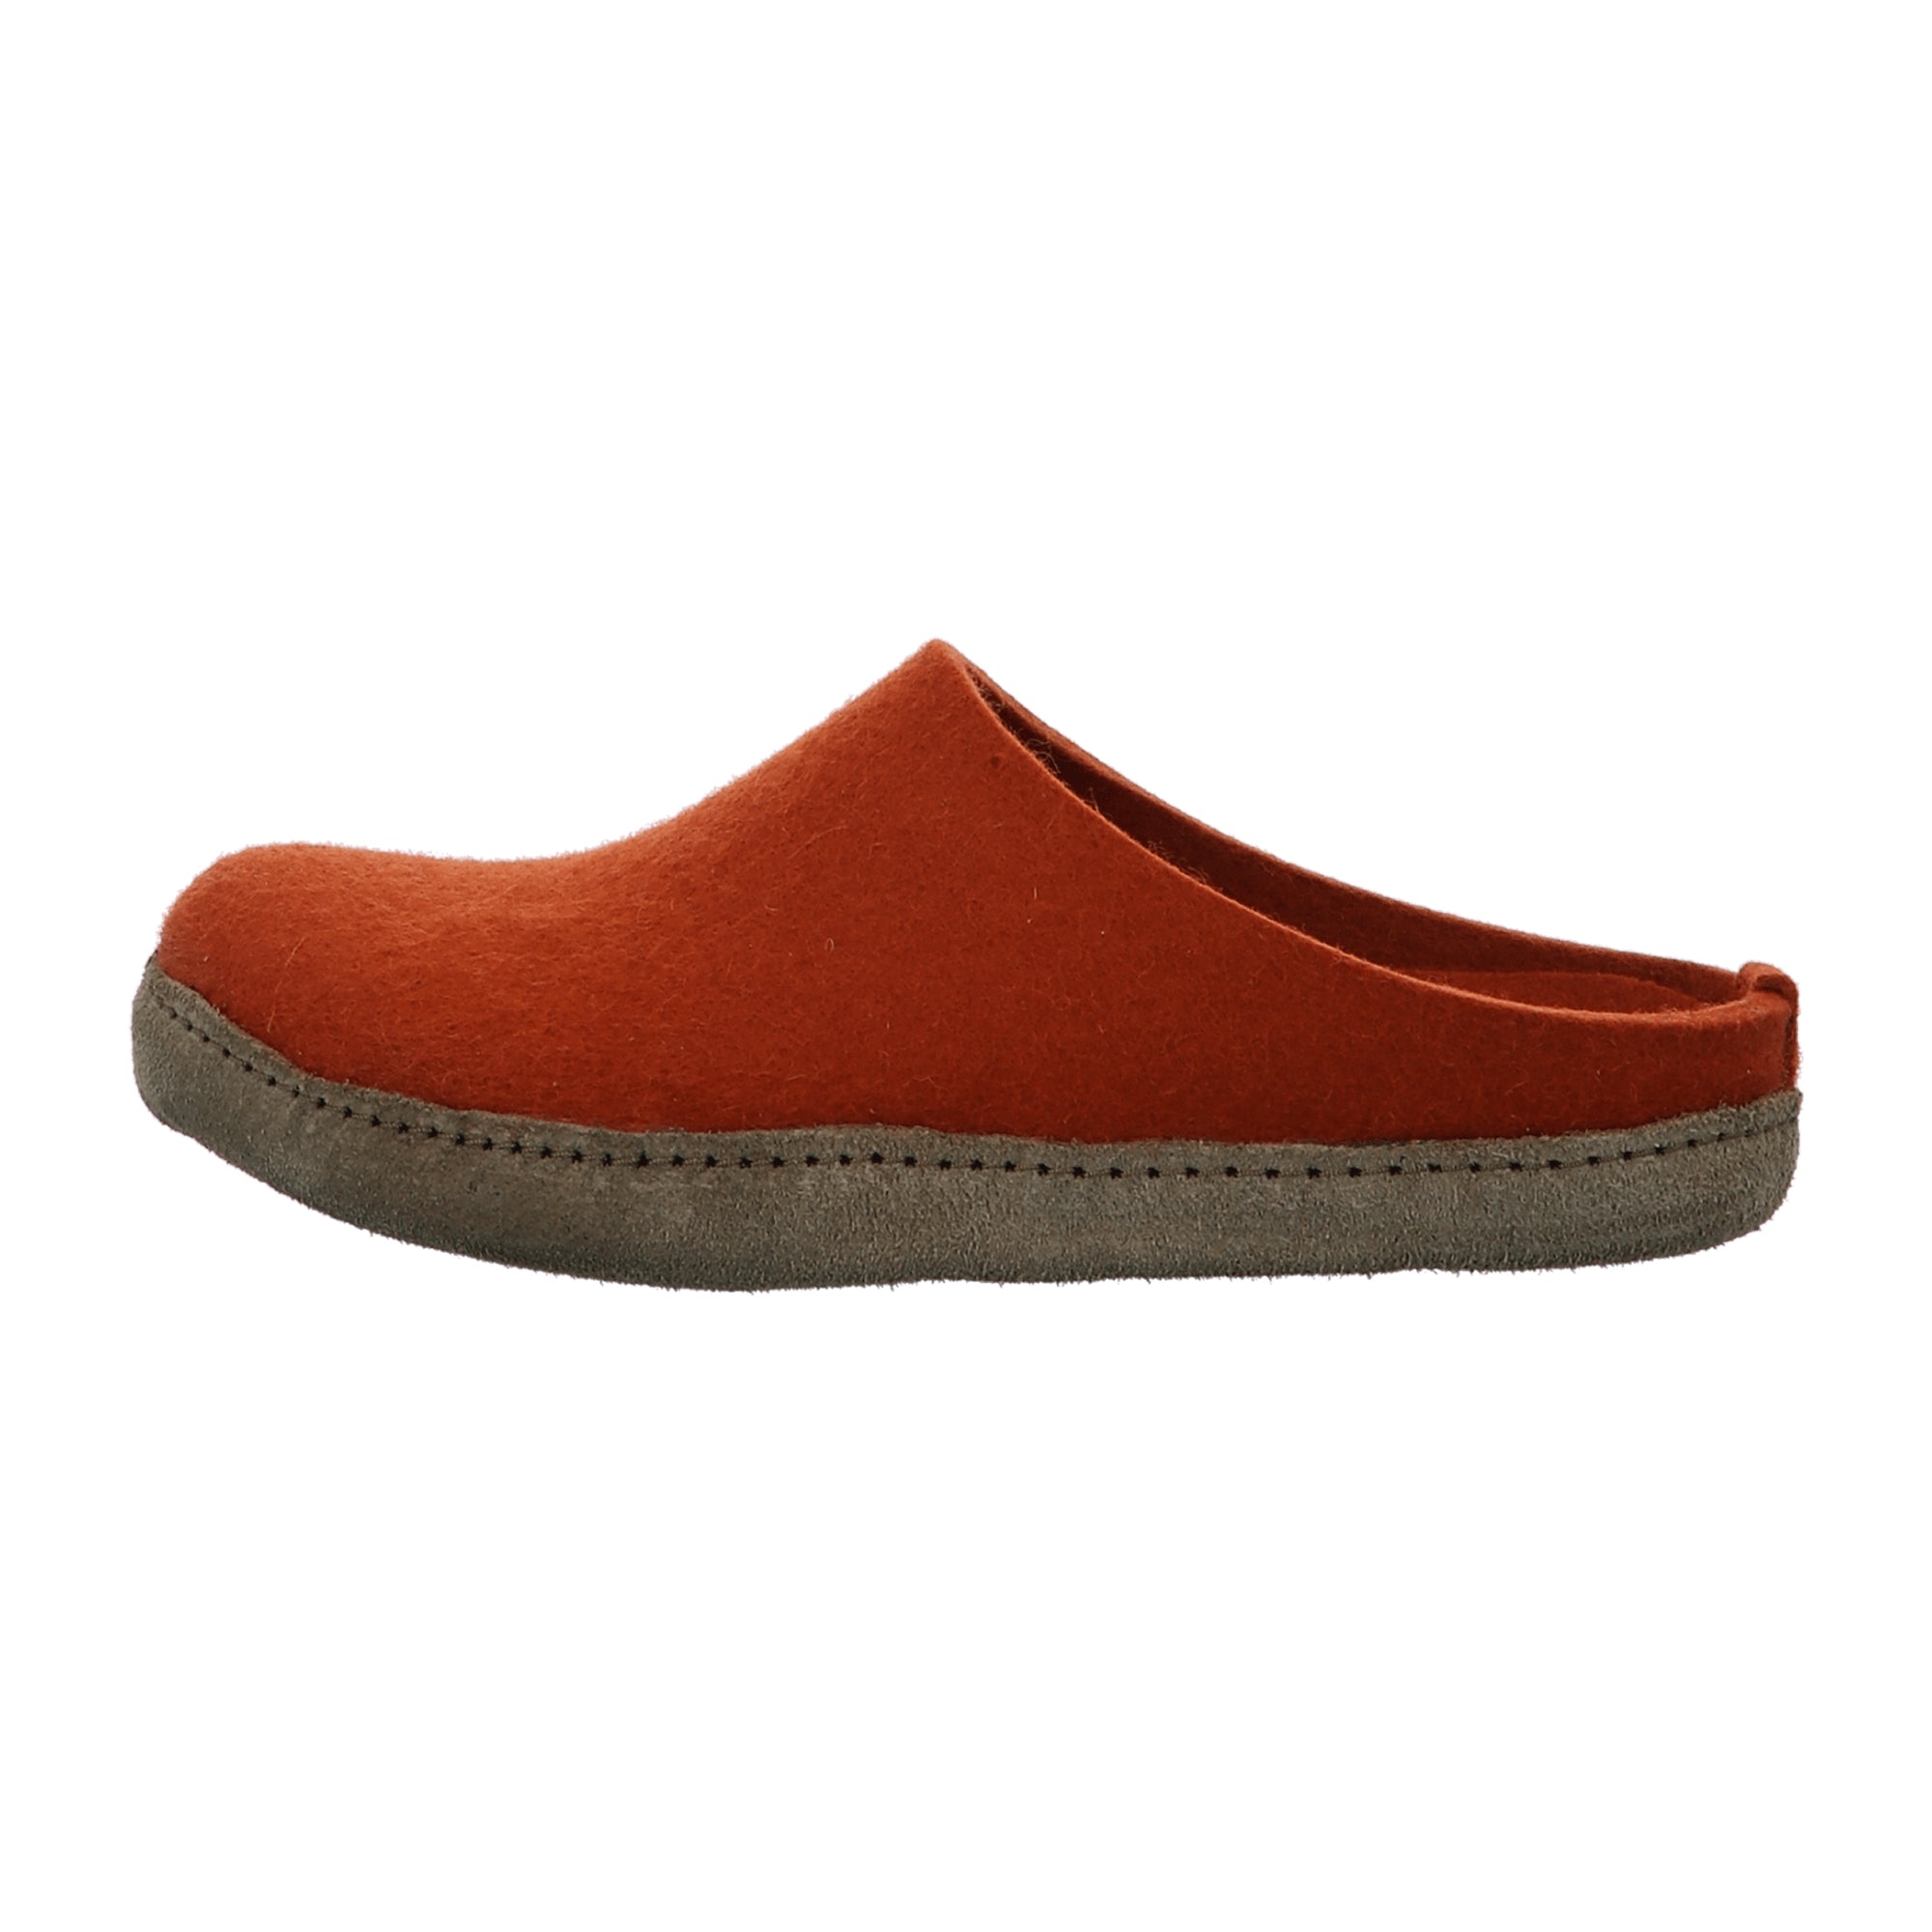 Haflinger Women's Slippers in Vibrant Orange - Comfortable & Stylish